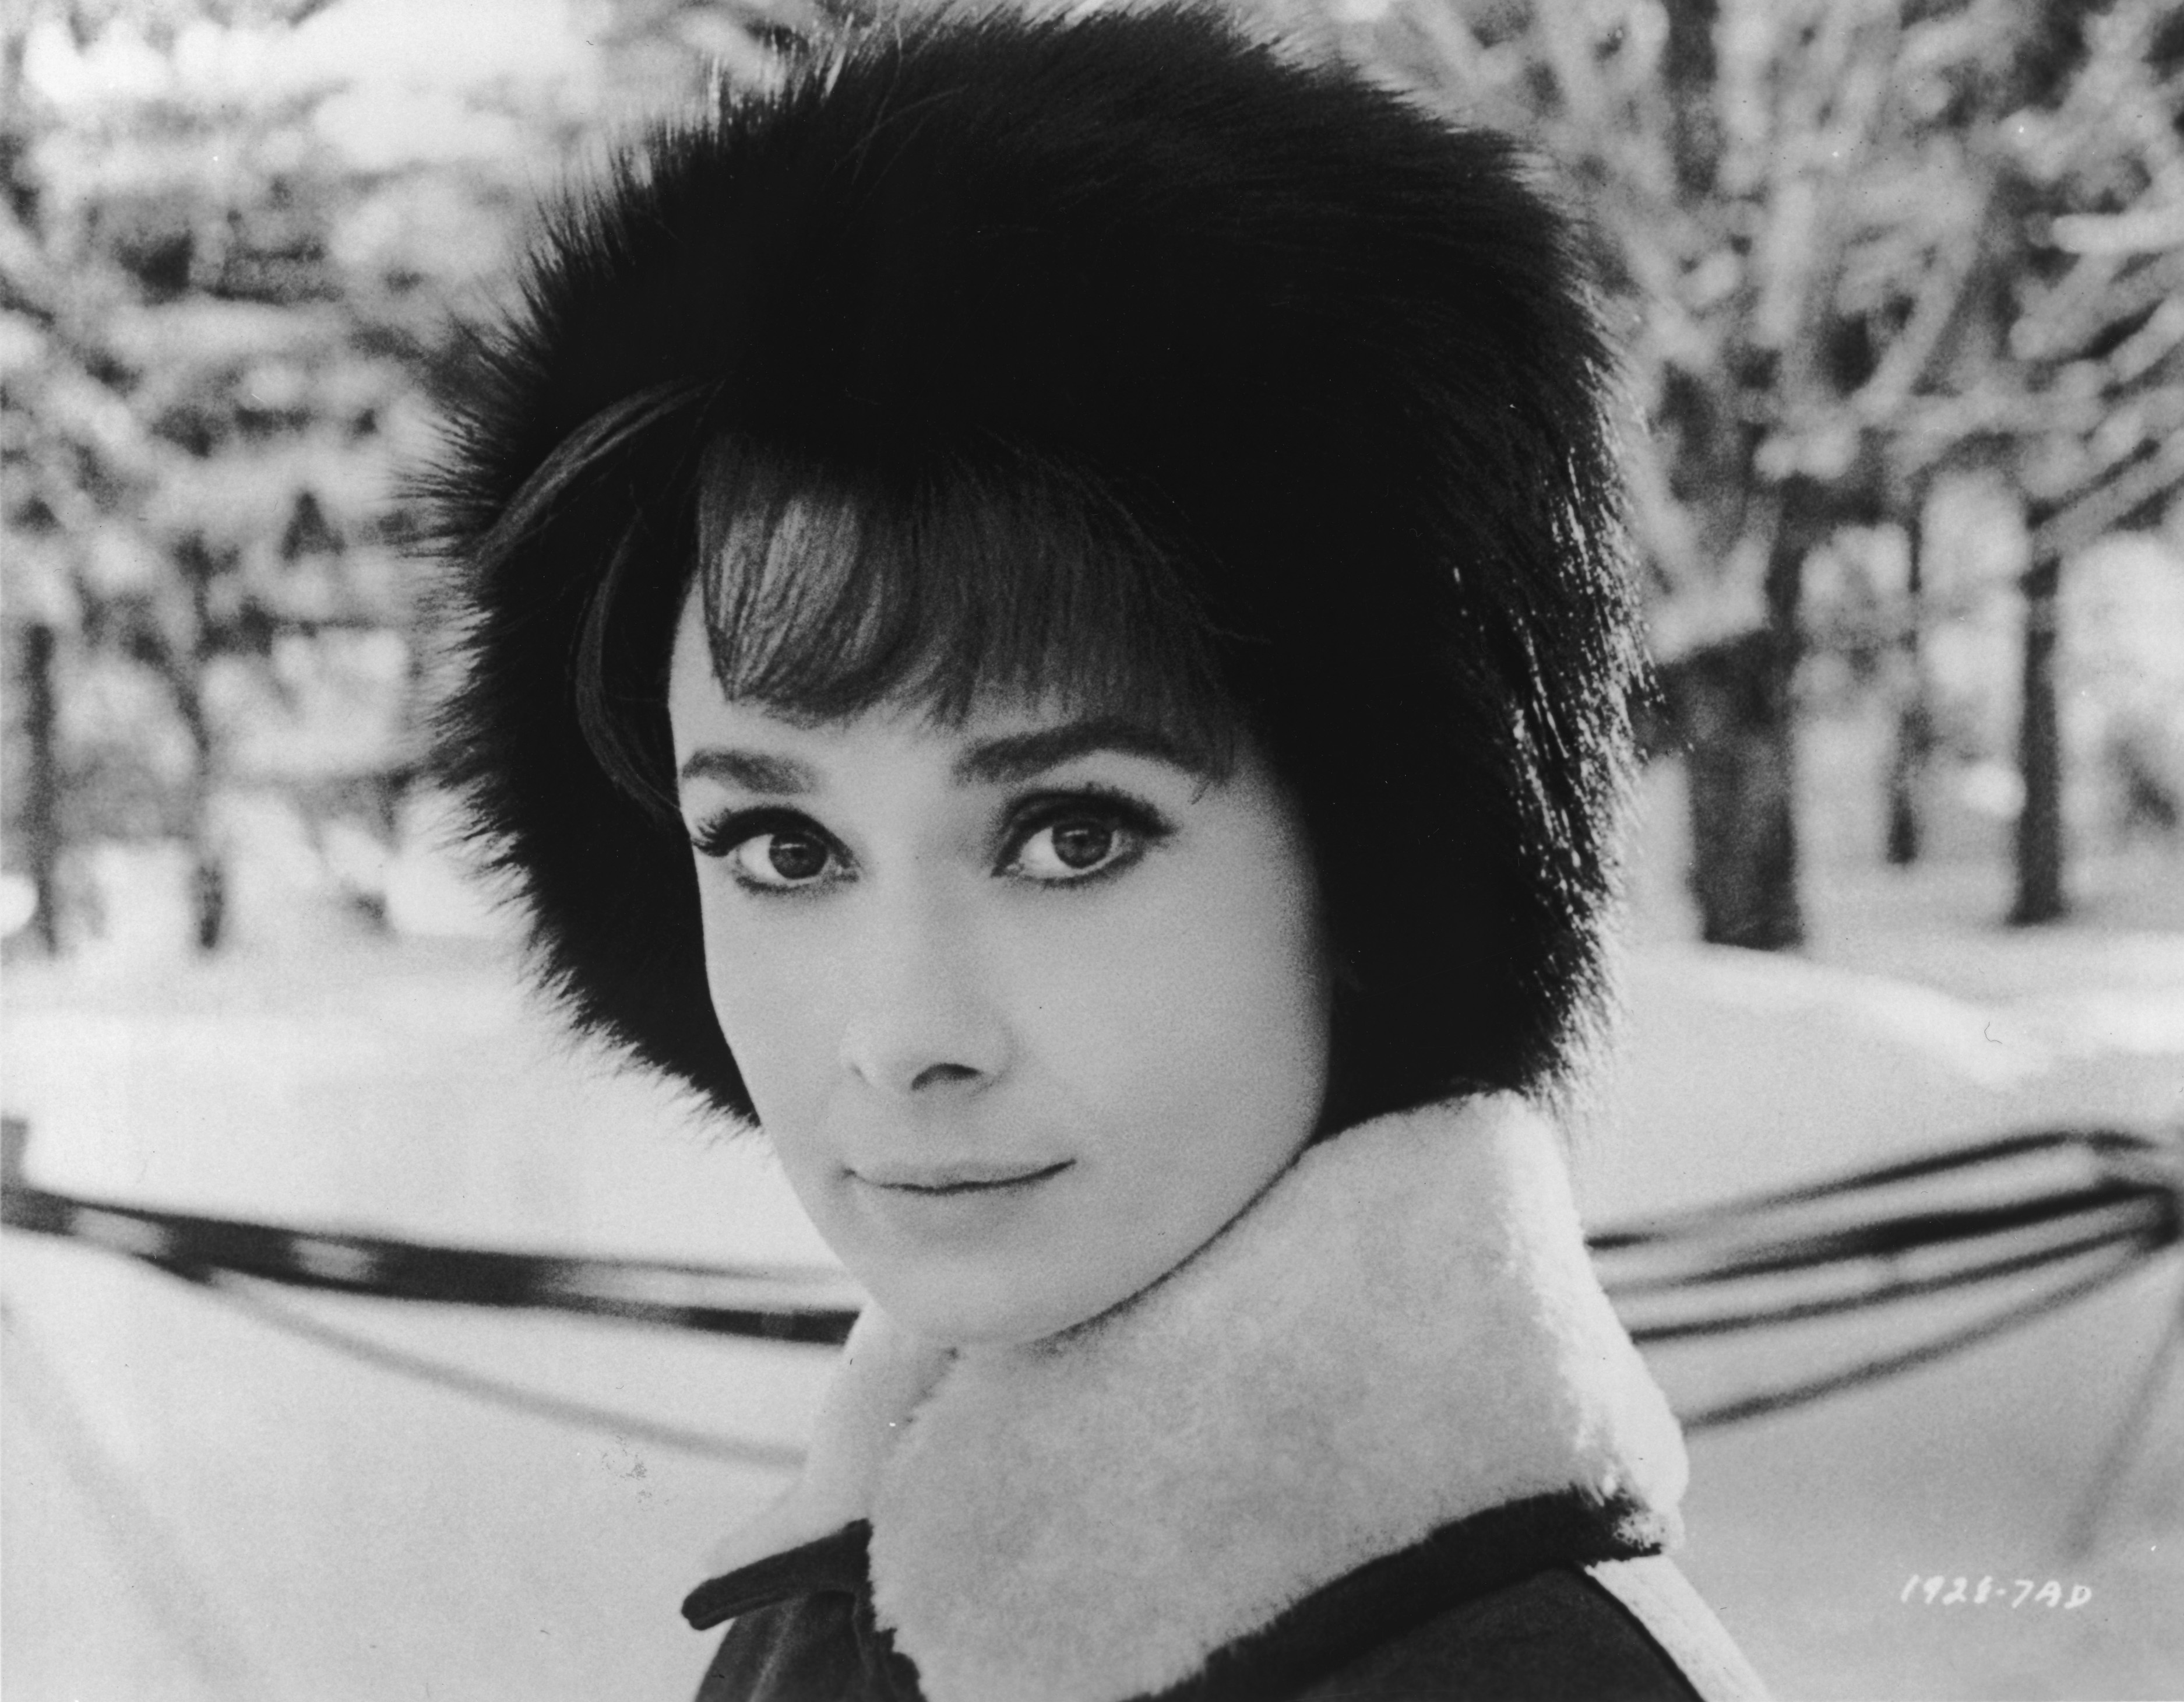 Download mobile wallpaper Celebrity, Audrey Hepburn for free.